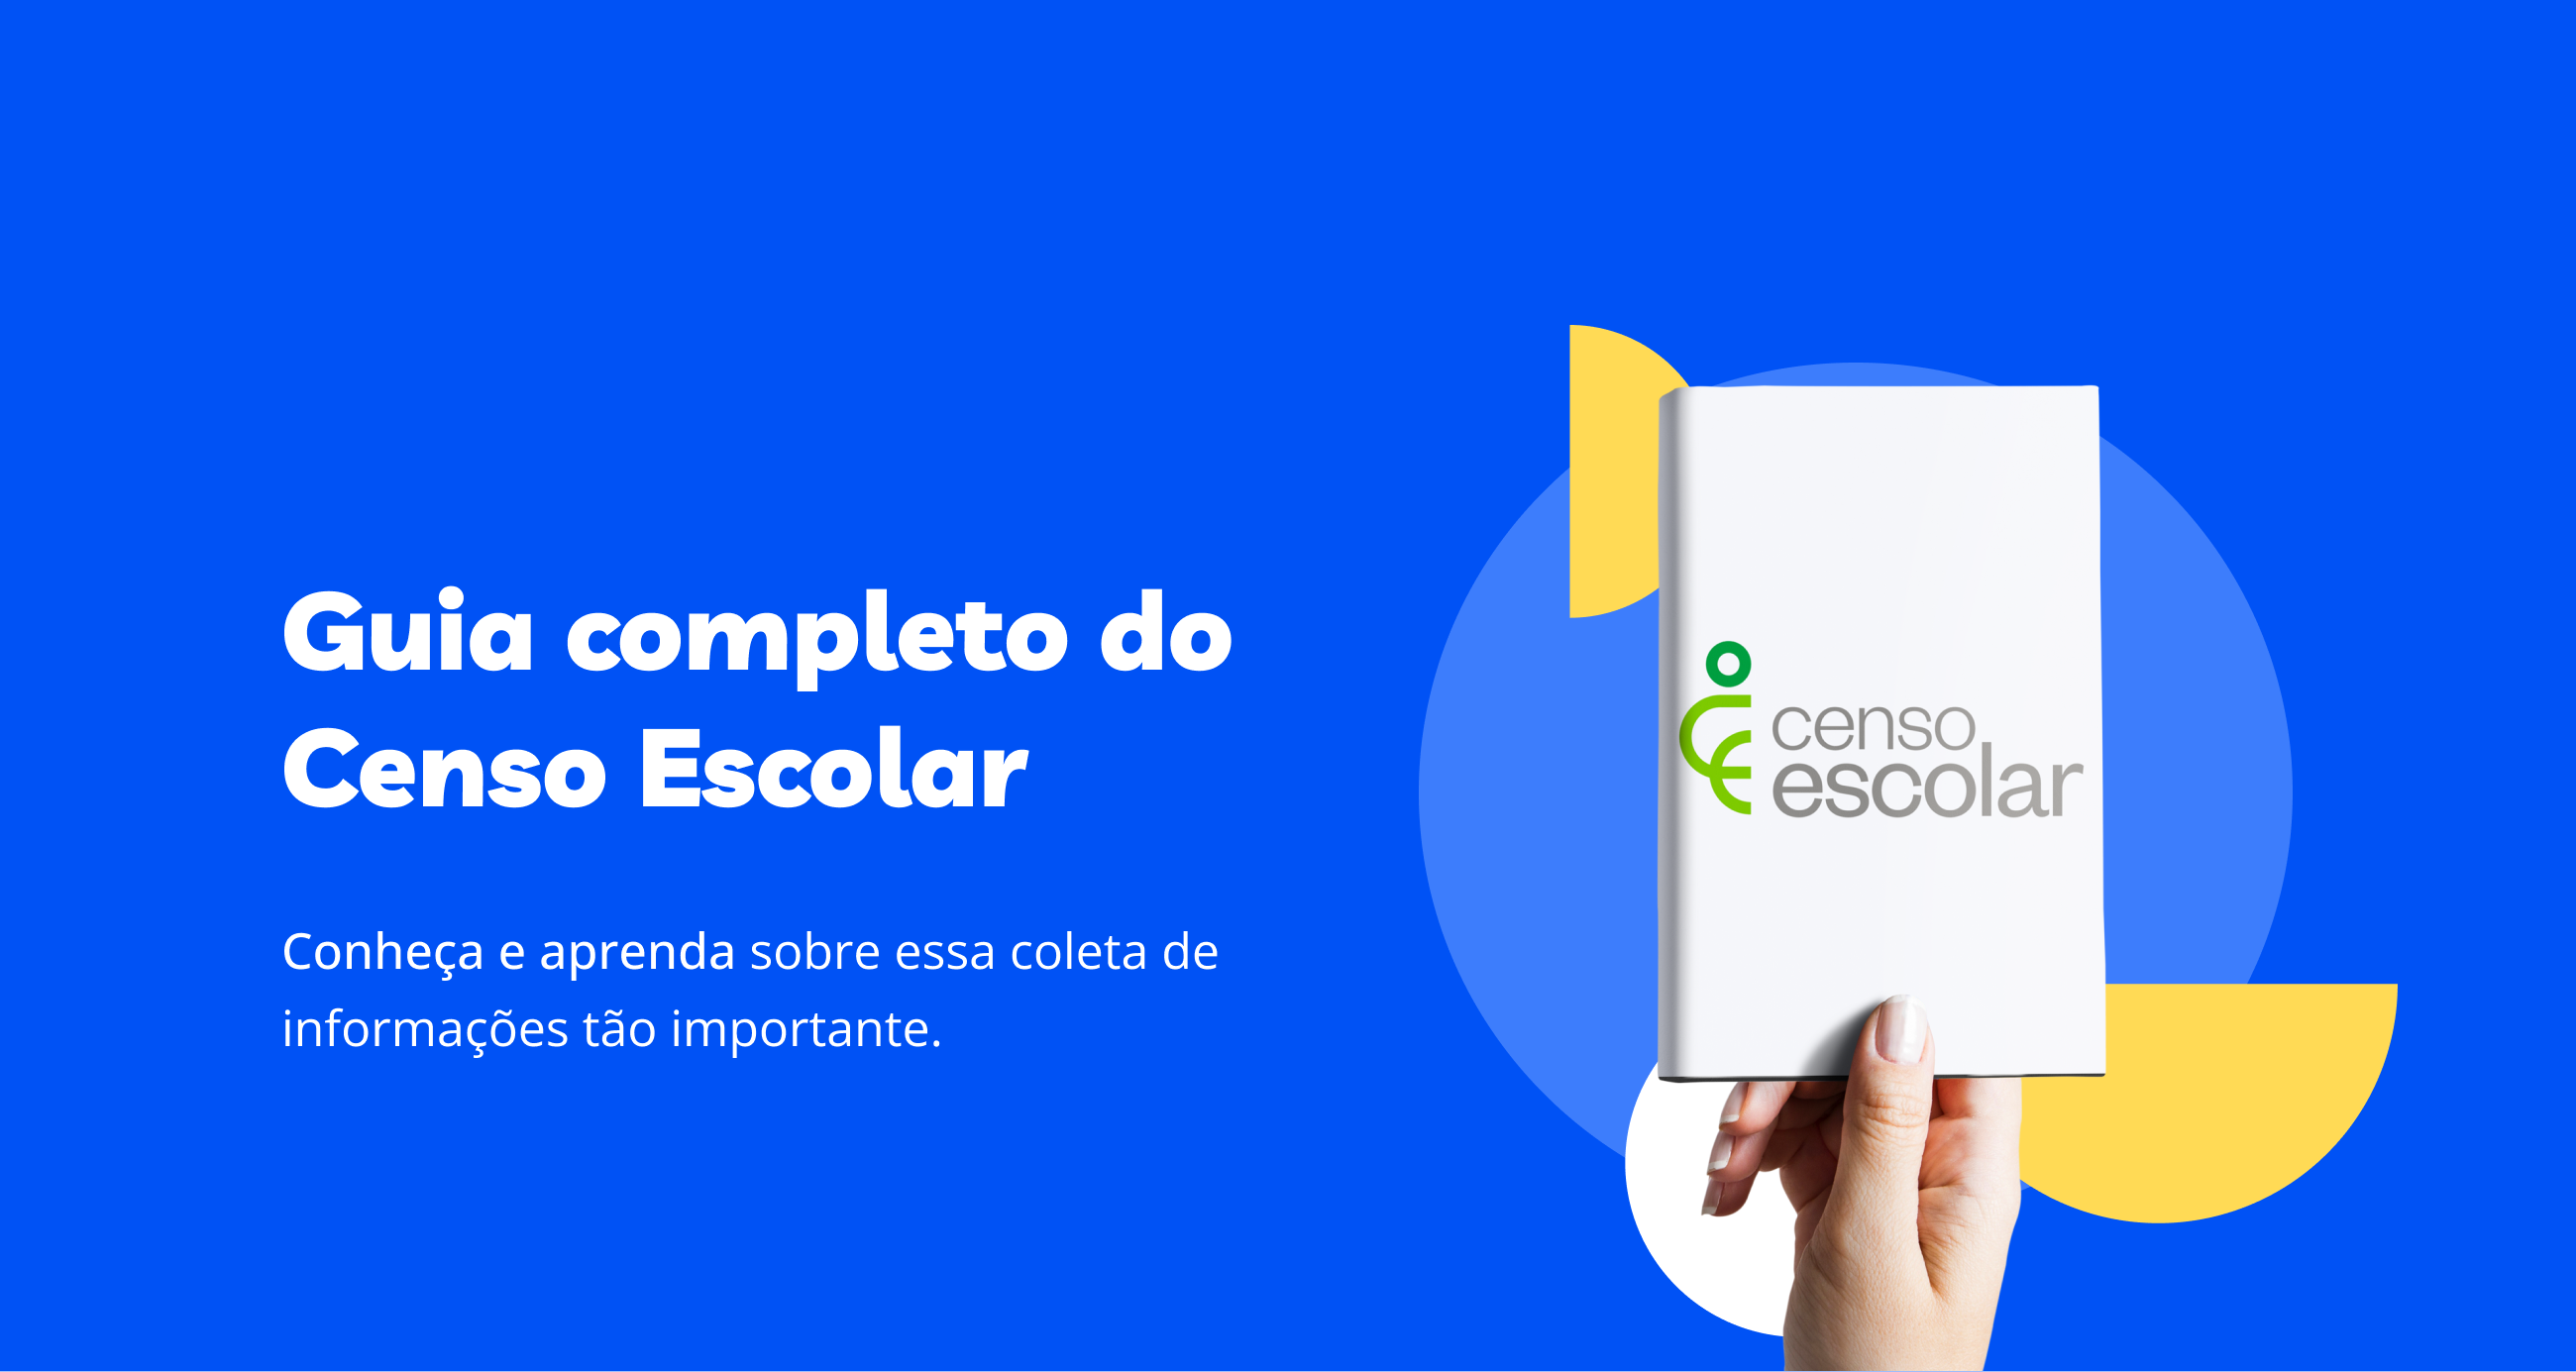 Guia completo do Censo Escolar download gratuito Portábilis Blog